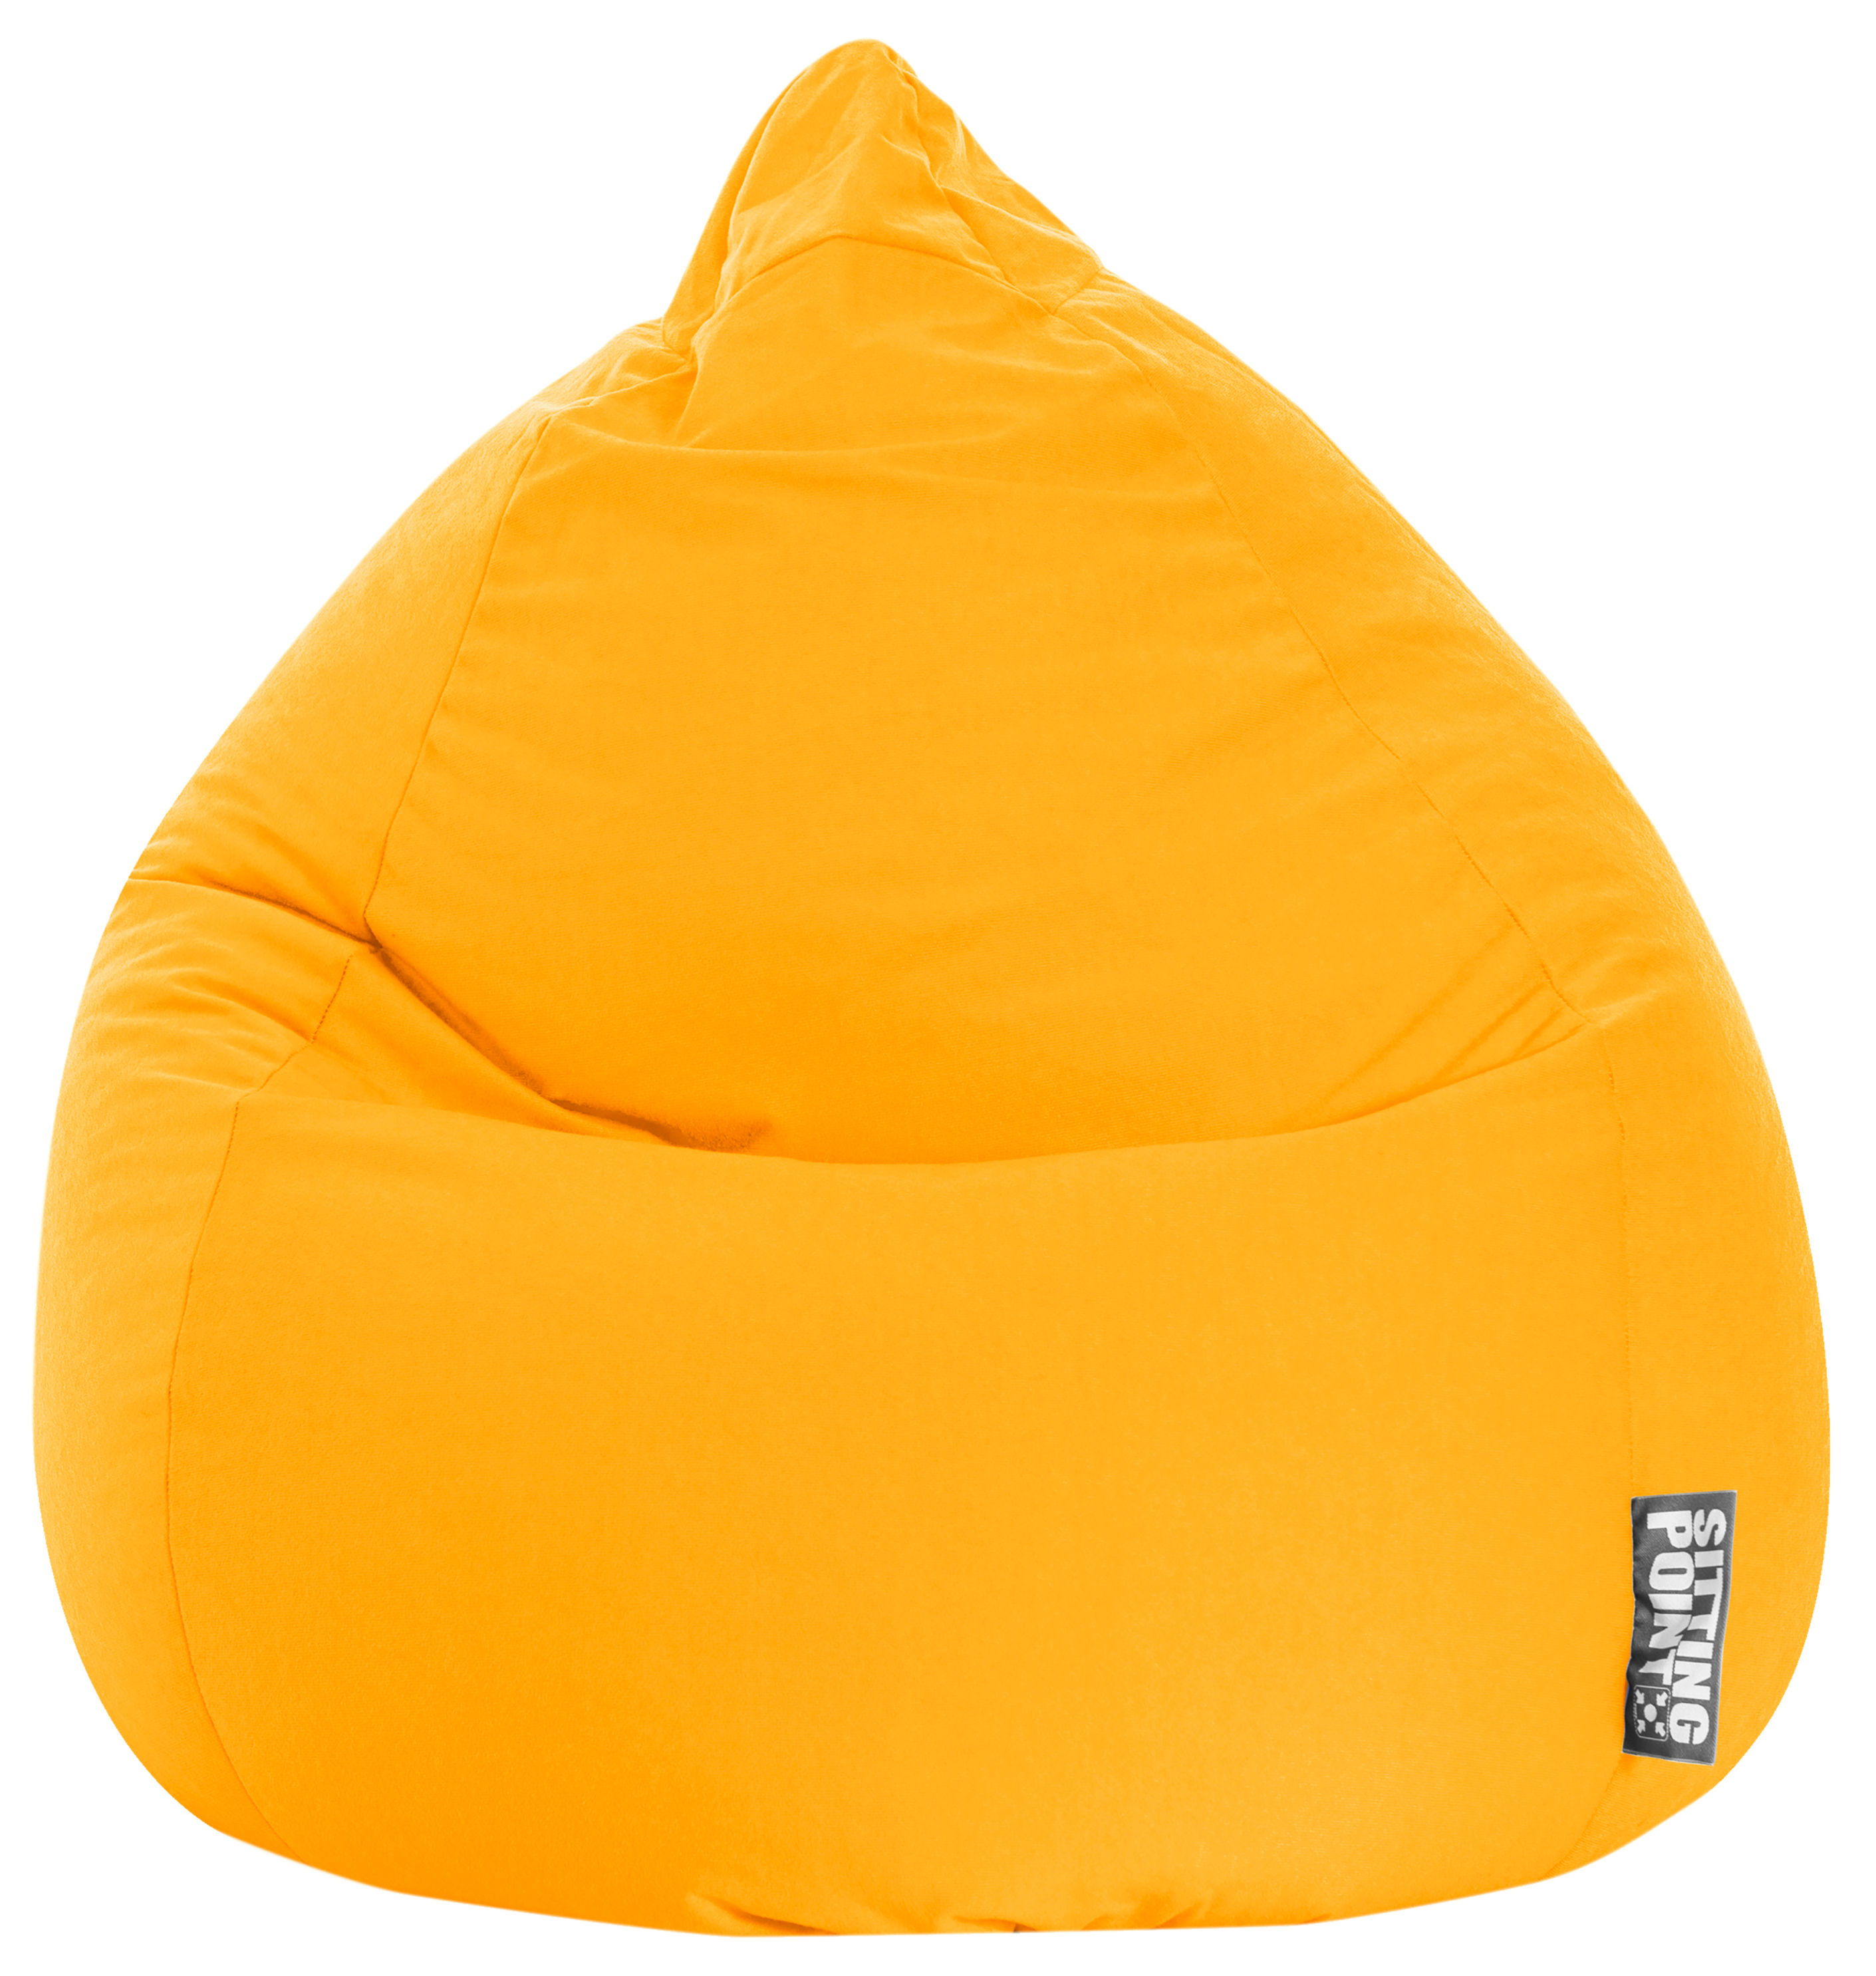 Sitzsack Easy Bean Bag XL Farbe: gelb bestellen | Weltbild.de